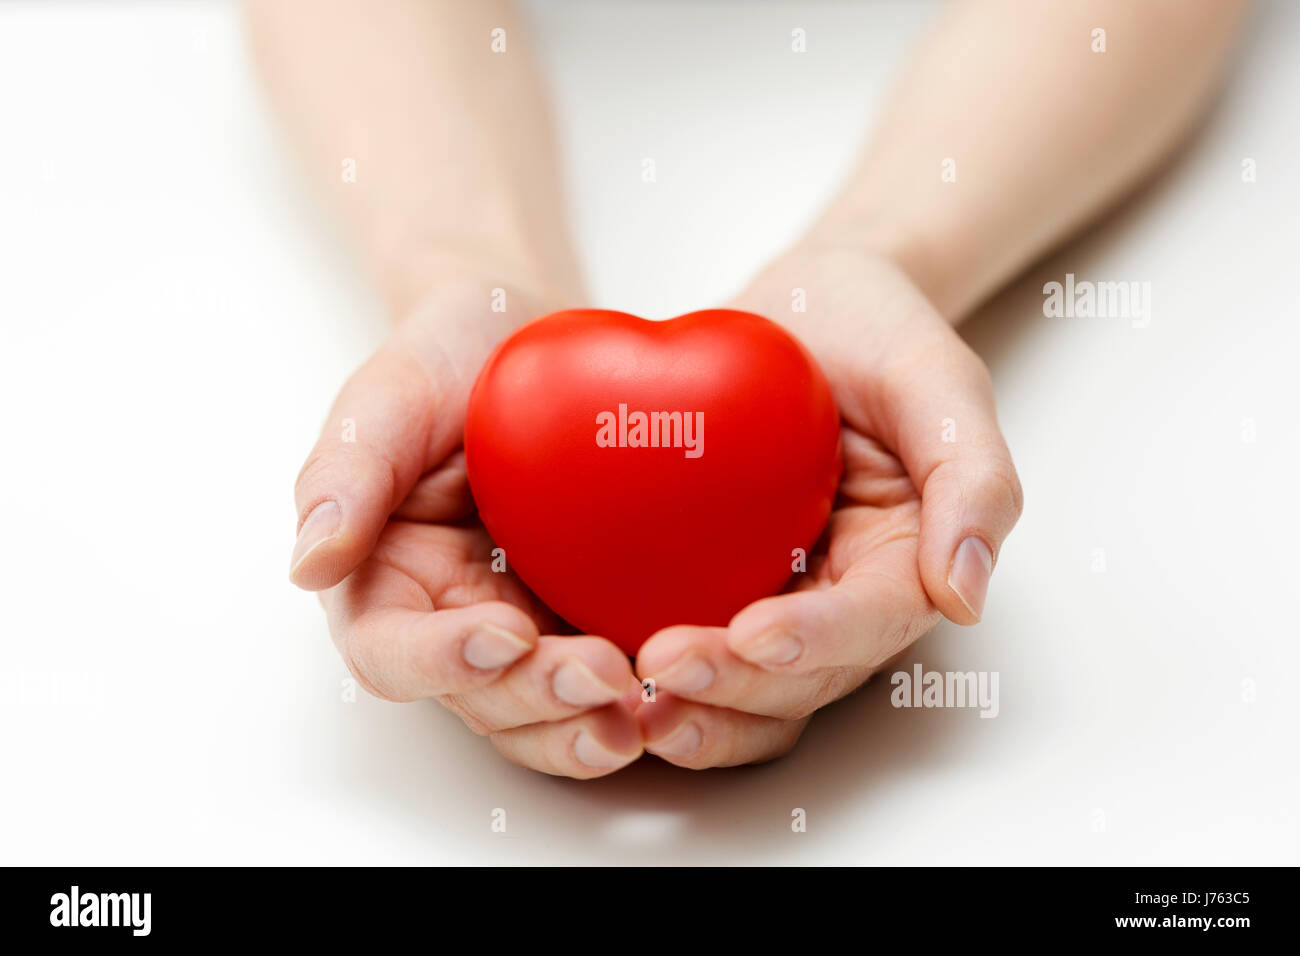 Soins cardiaques, de l'assurance-santé ou de donner de l'amour concept Banque D'Images